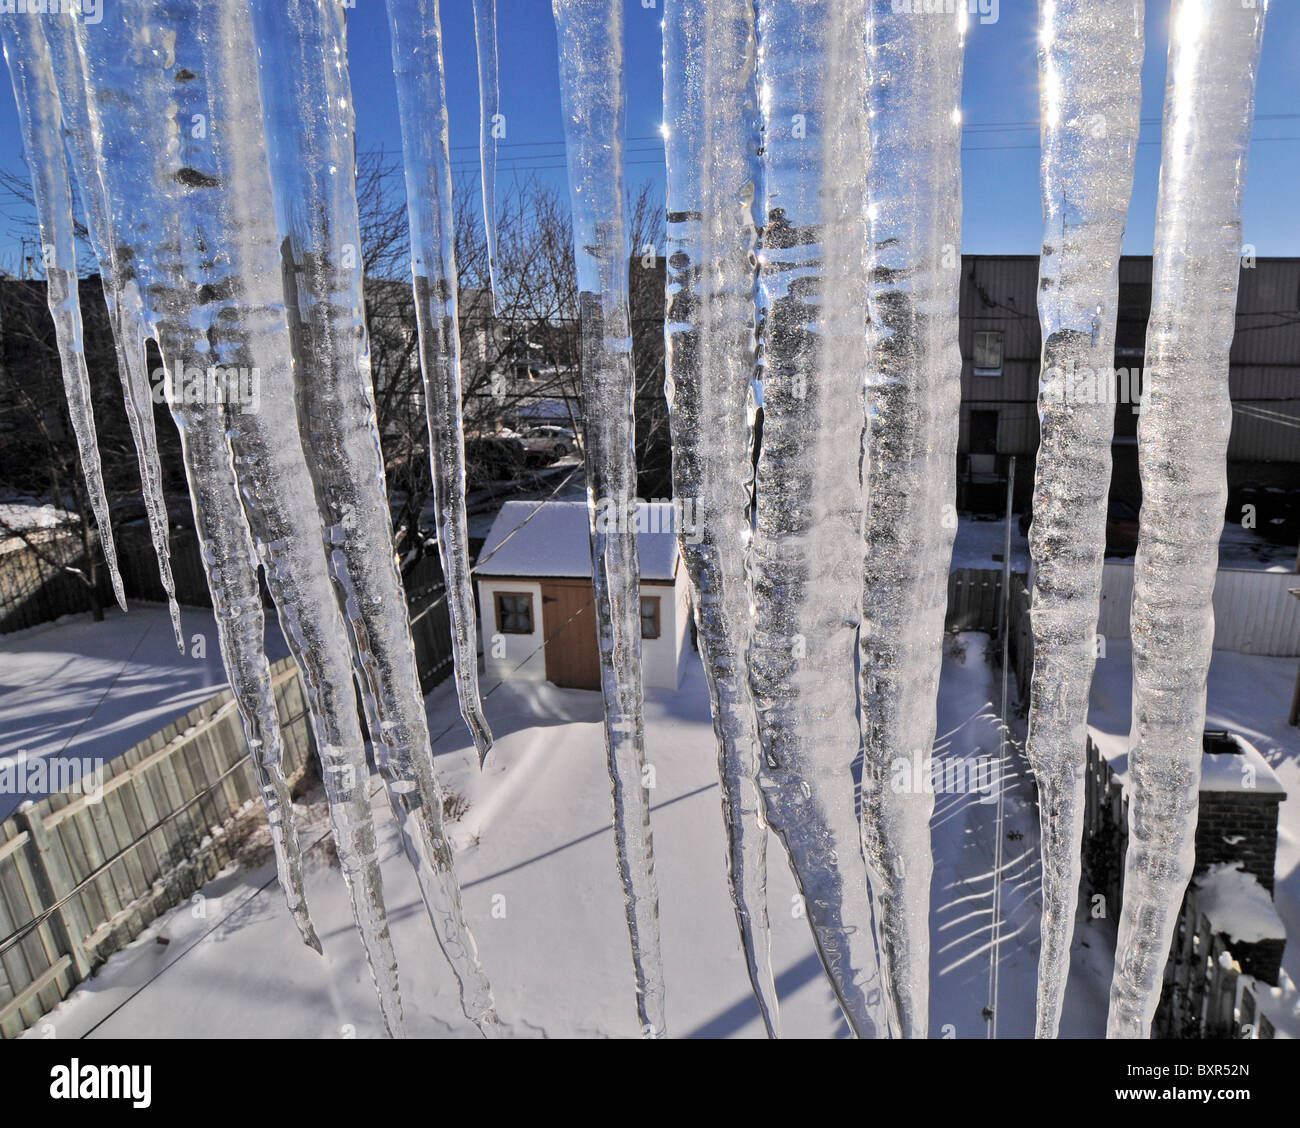 Eiszapfen gebildet außerhalb eines Fensters einen Winter in Kanada darstellt. Stockfoto